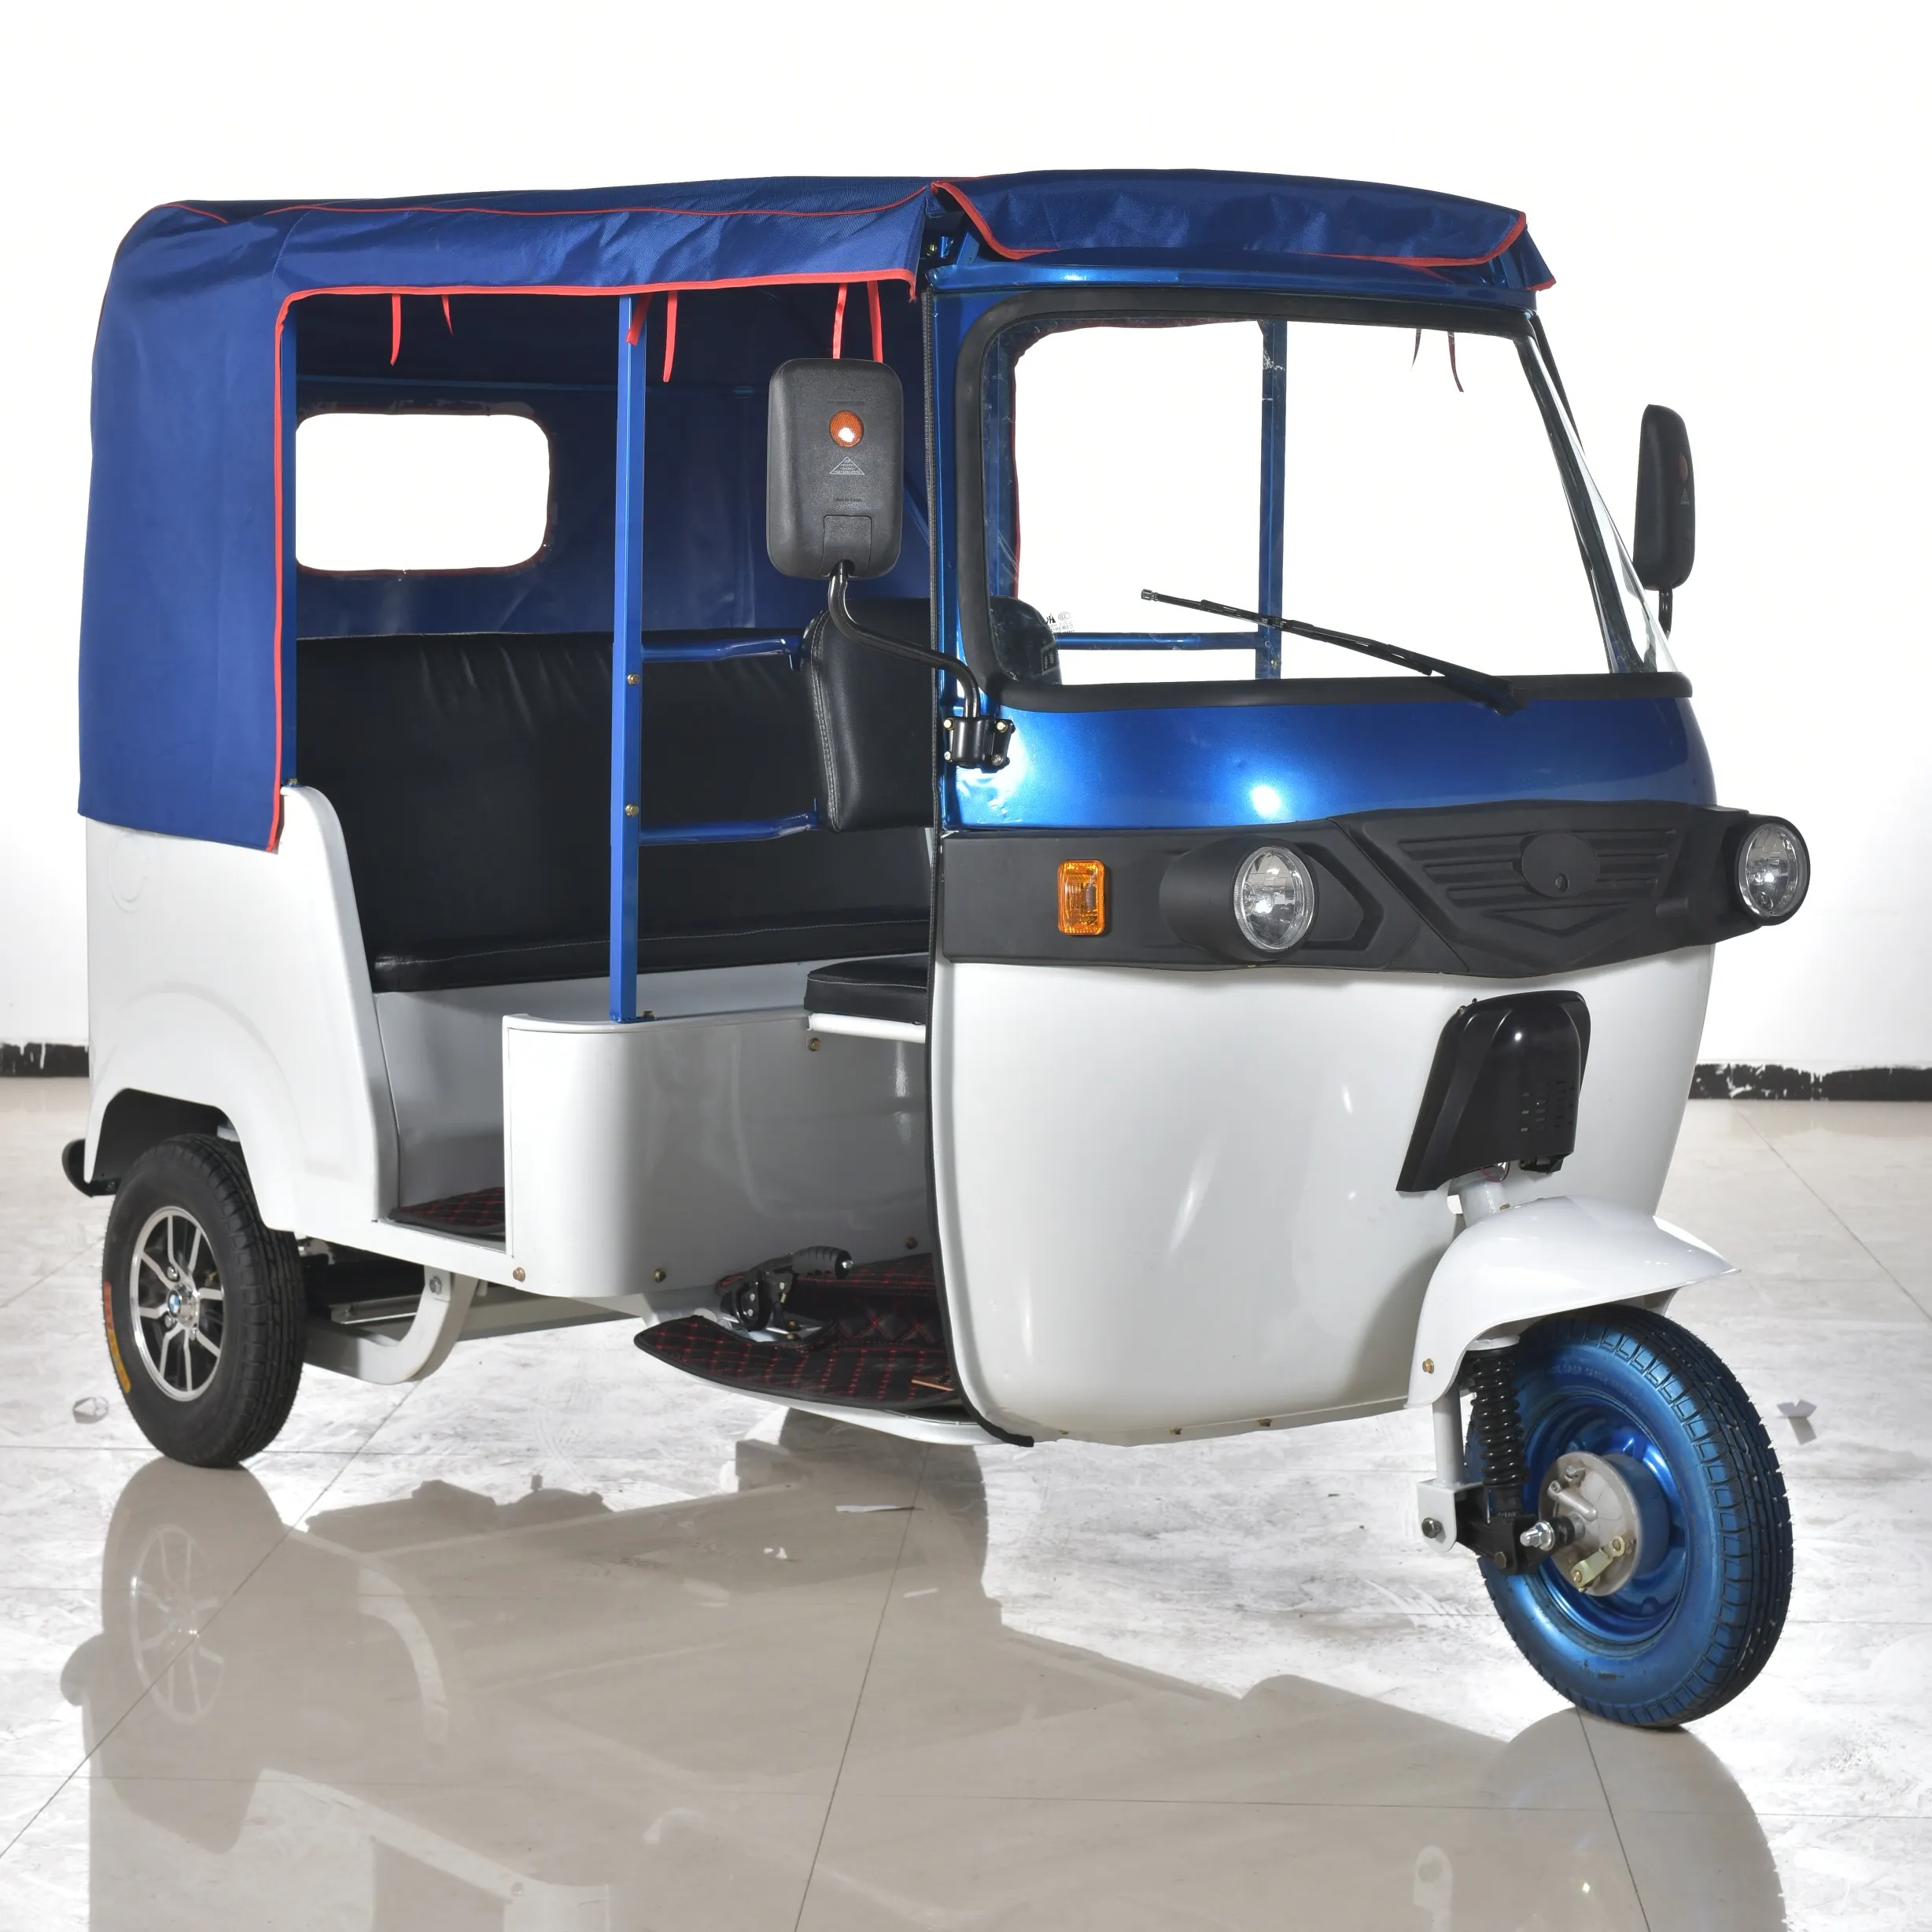 بطارية ليثيوم ، e ، ريكشو في الهند ، صديقة للبيئة, عربة سي إن جي أتوماتيكية ، أفضل جودة ، ثلاث عجلات كهربائية